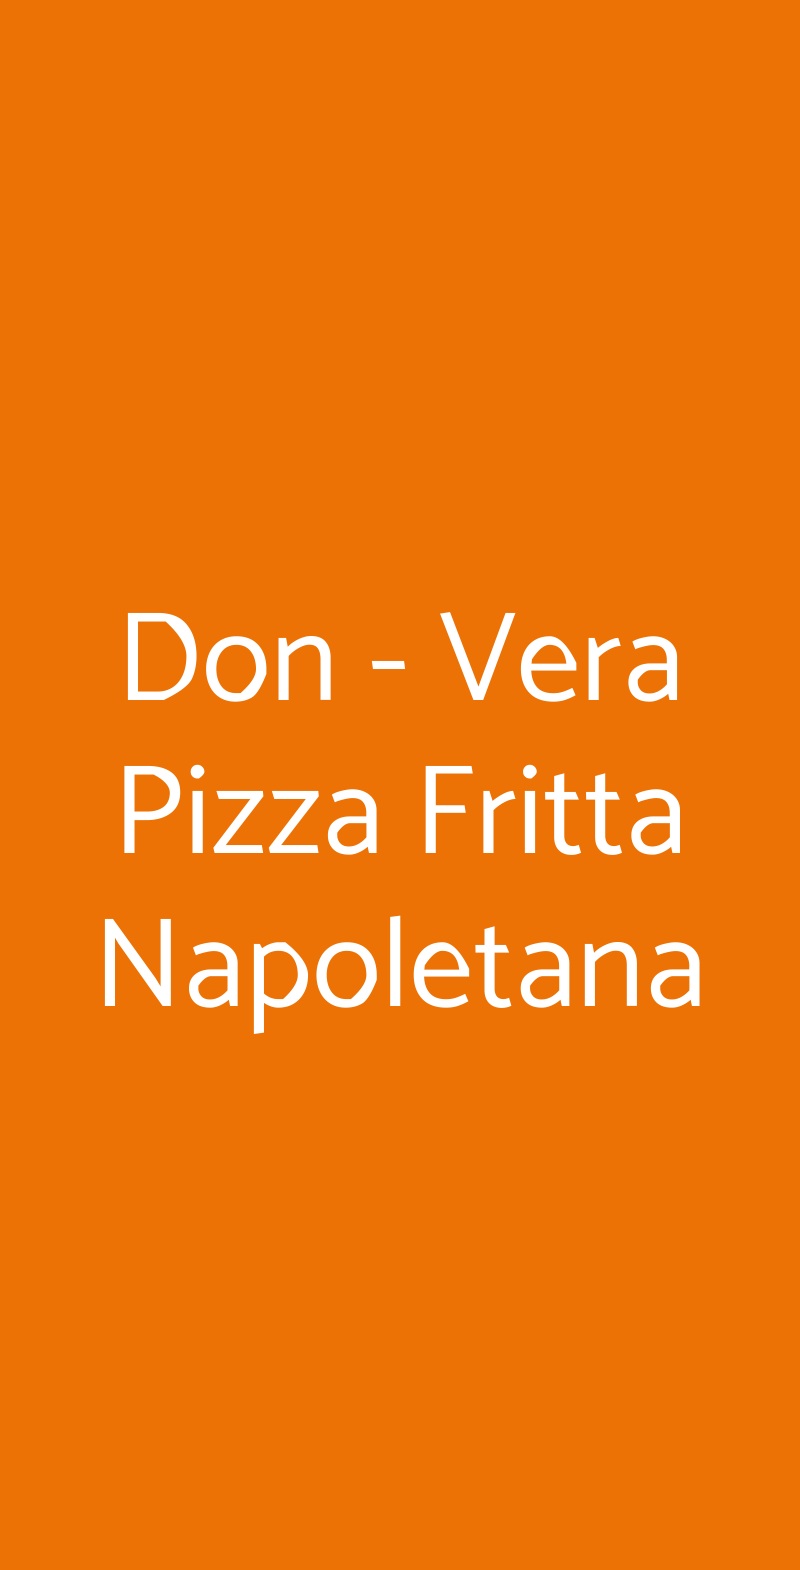 Don - Vera Pizza Fritta Napoletana Roma menù 1 pagina